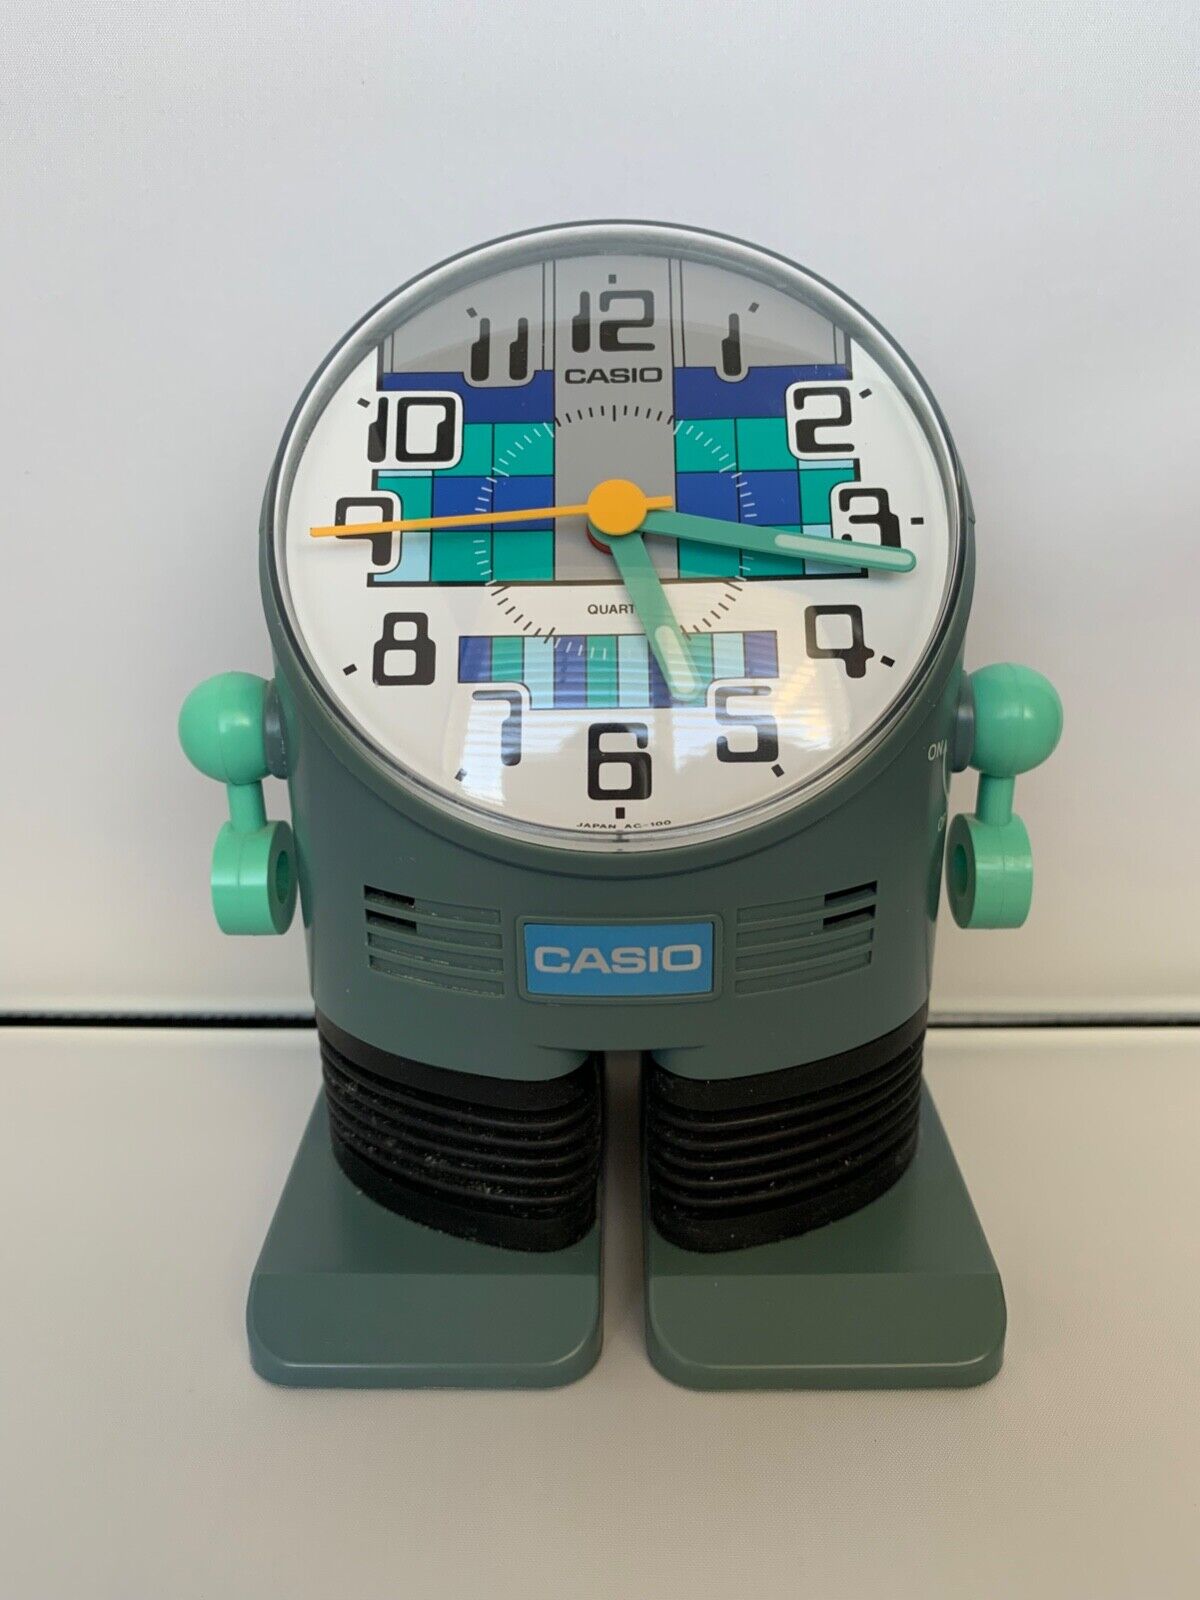 Casio Robot Action Alarm Clock AC-100 Vintage 1980s Japan Blue